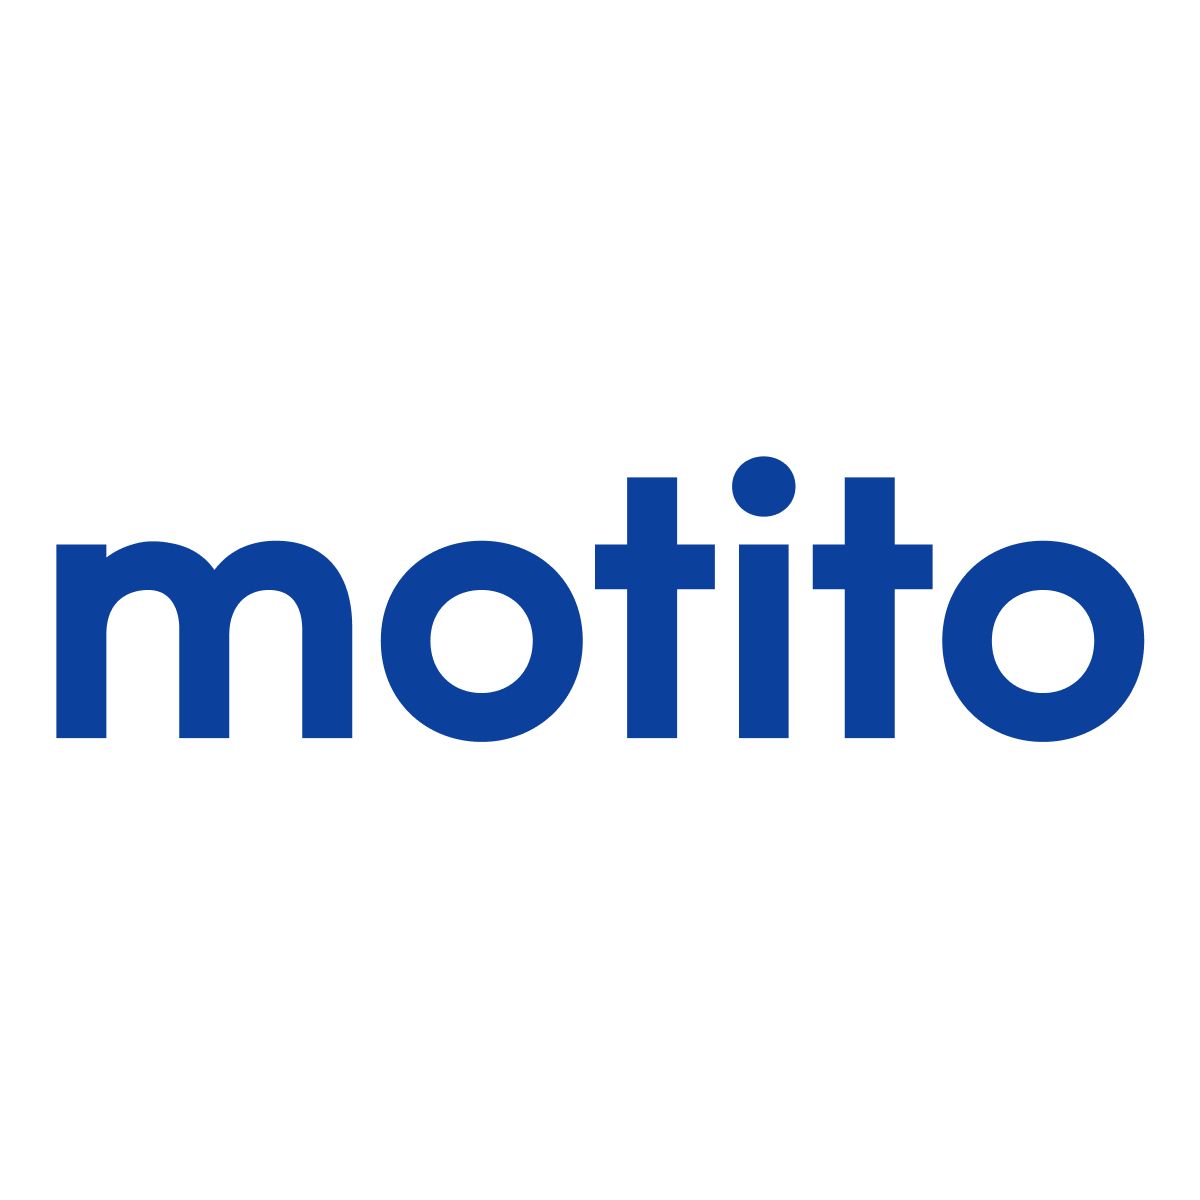 Motito Logo